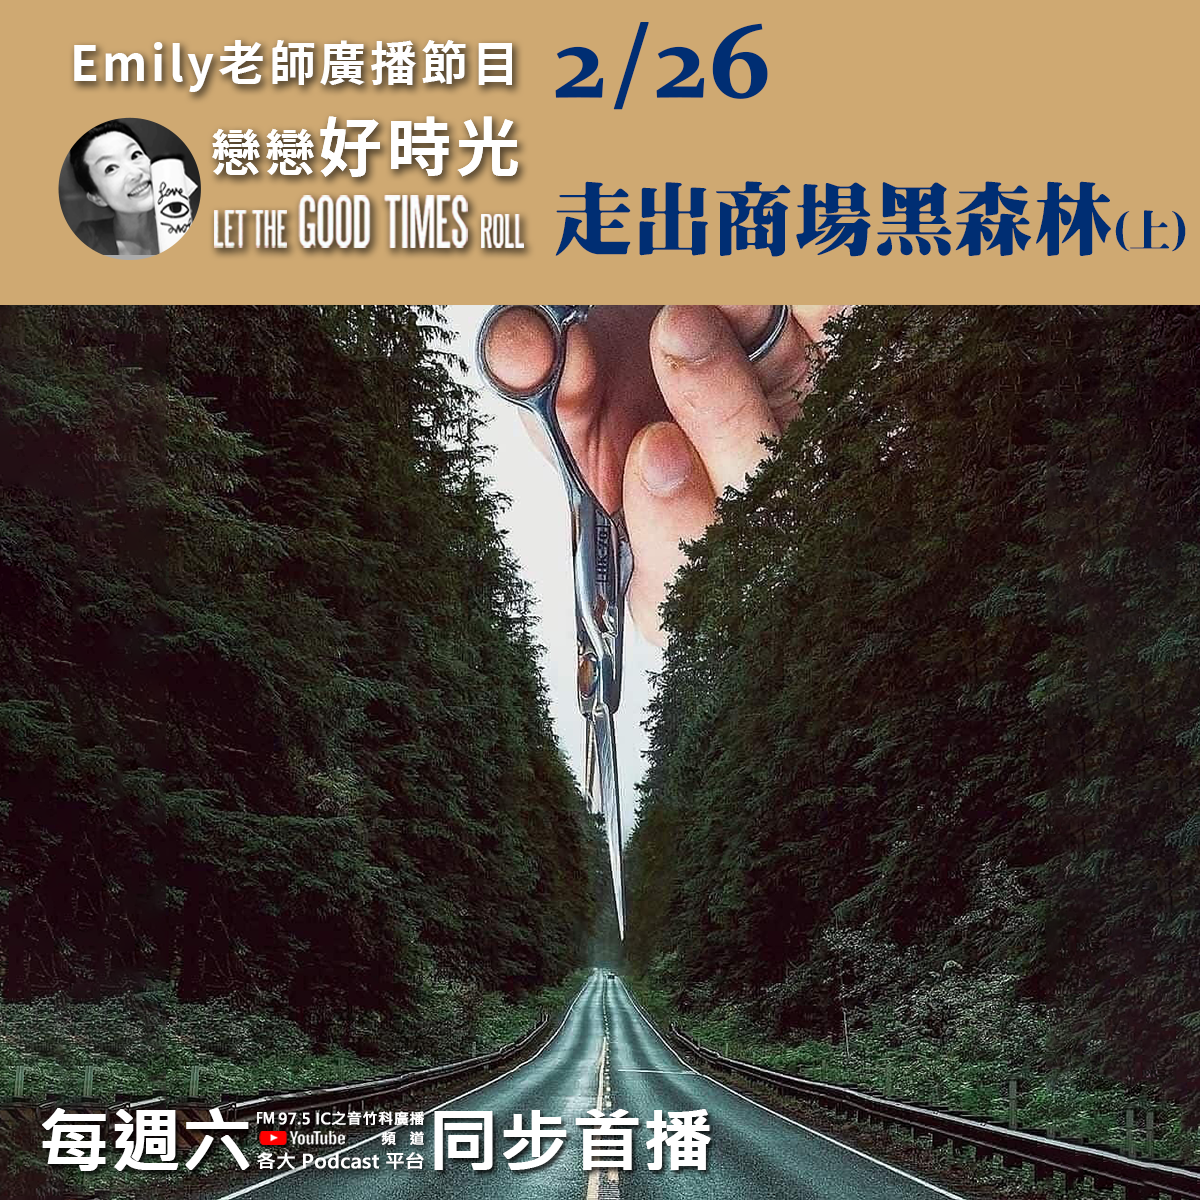 Emily老師「戀戀好時光」節目-2022/2/26-走出商場黑森林(上)